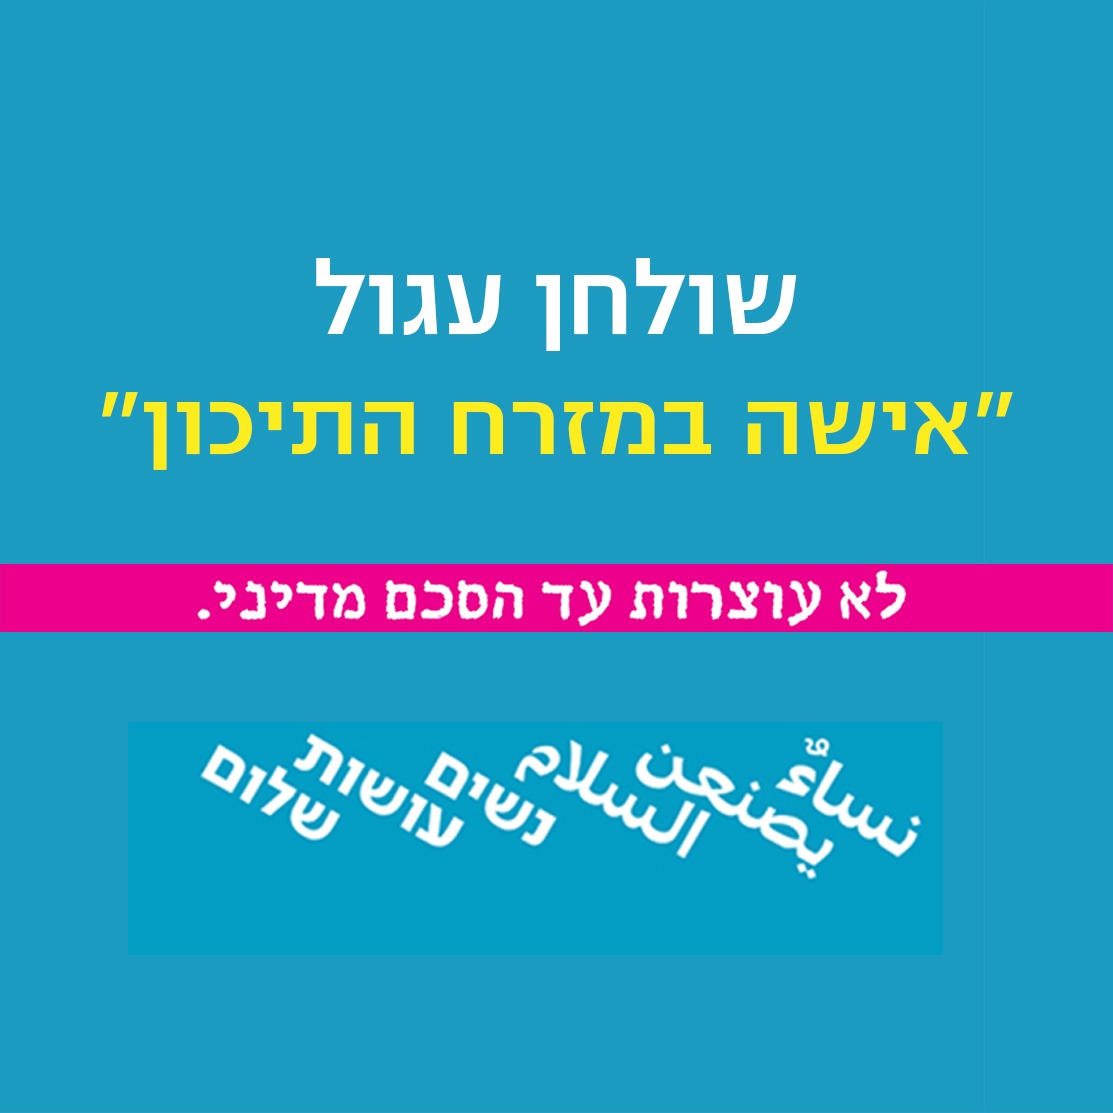 יום האישה 2017 - שולחן עגול דו-לשוני (עברית ורוסית) בנושא "להיות אישה במזרח התיכון"